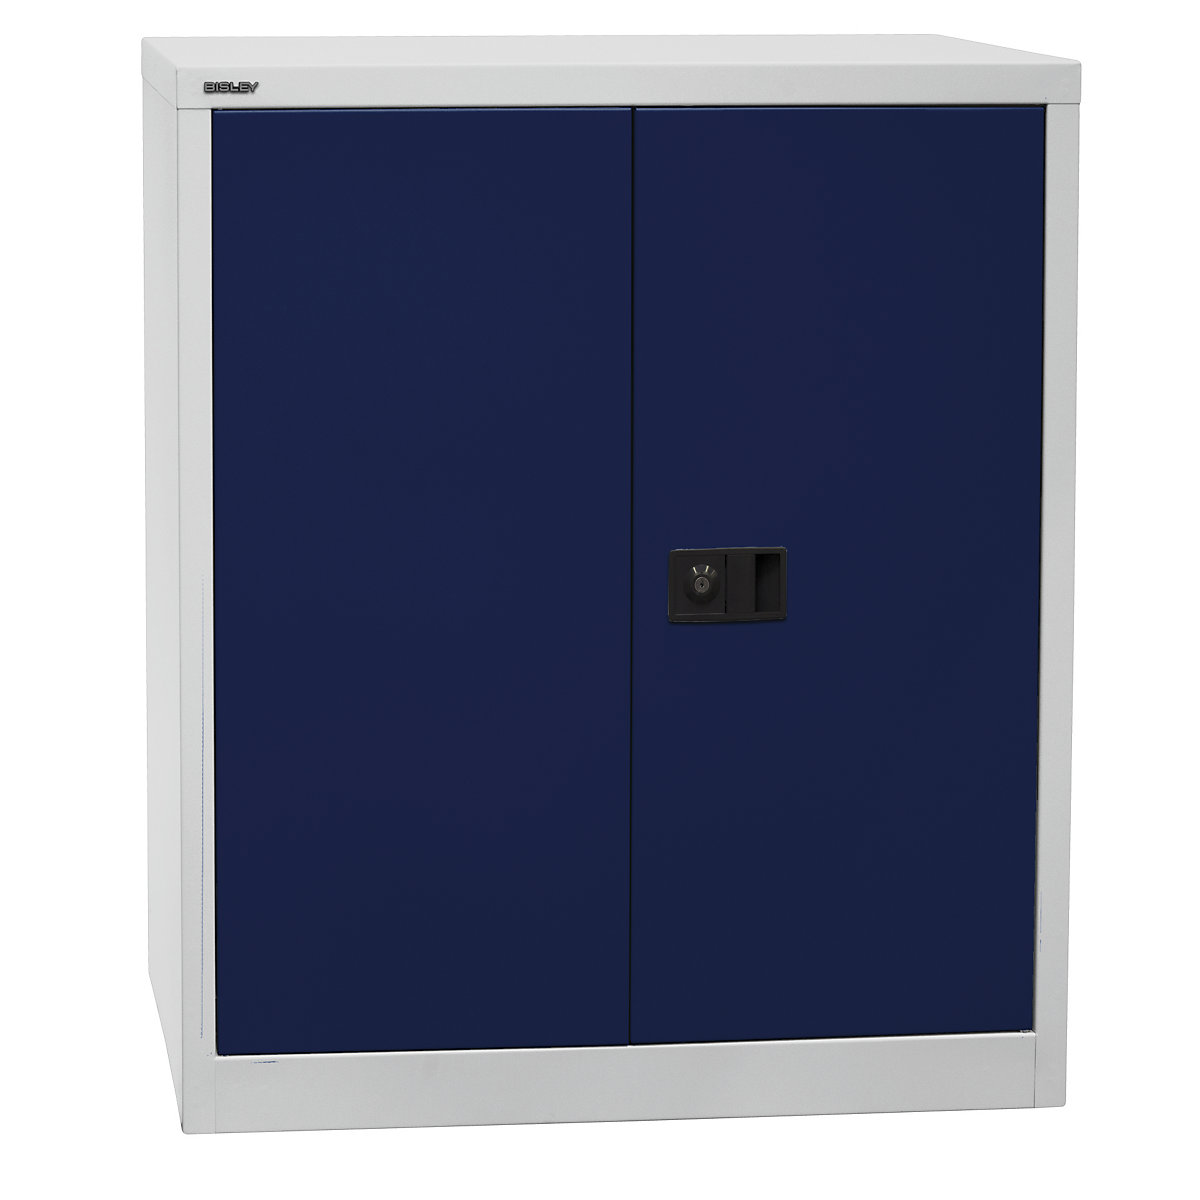 Omara s krilnimi vrati UNIVERSAL – BISLEY, VxŠxG 1000 x 914 x 400 mm, 1 pocinkana polica, 2 nivoja, svetlo siva / oxfordsko modra-6